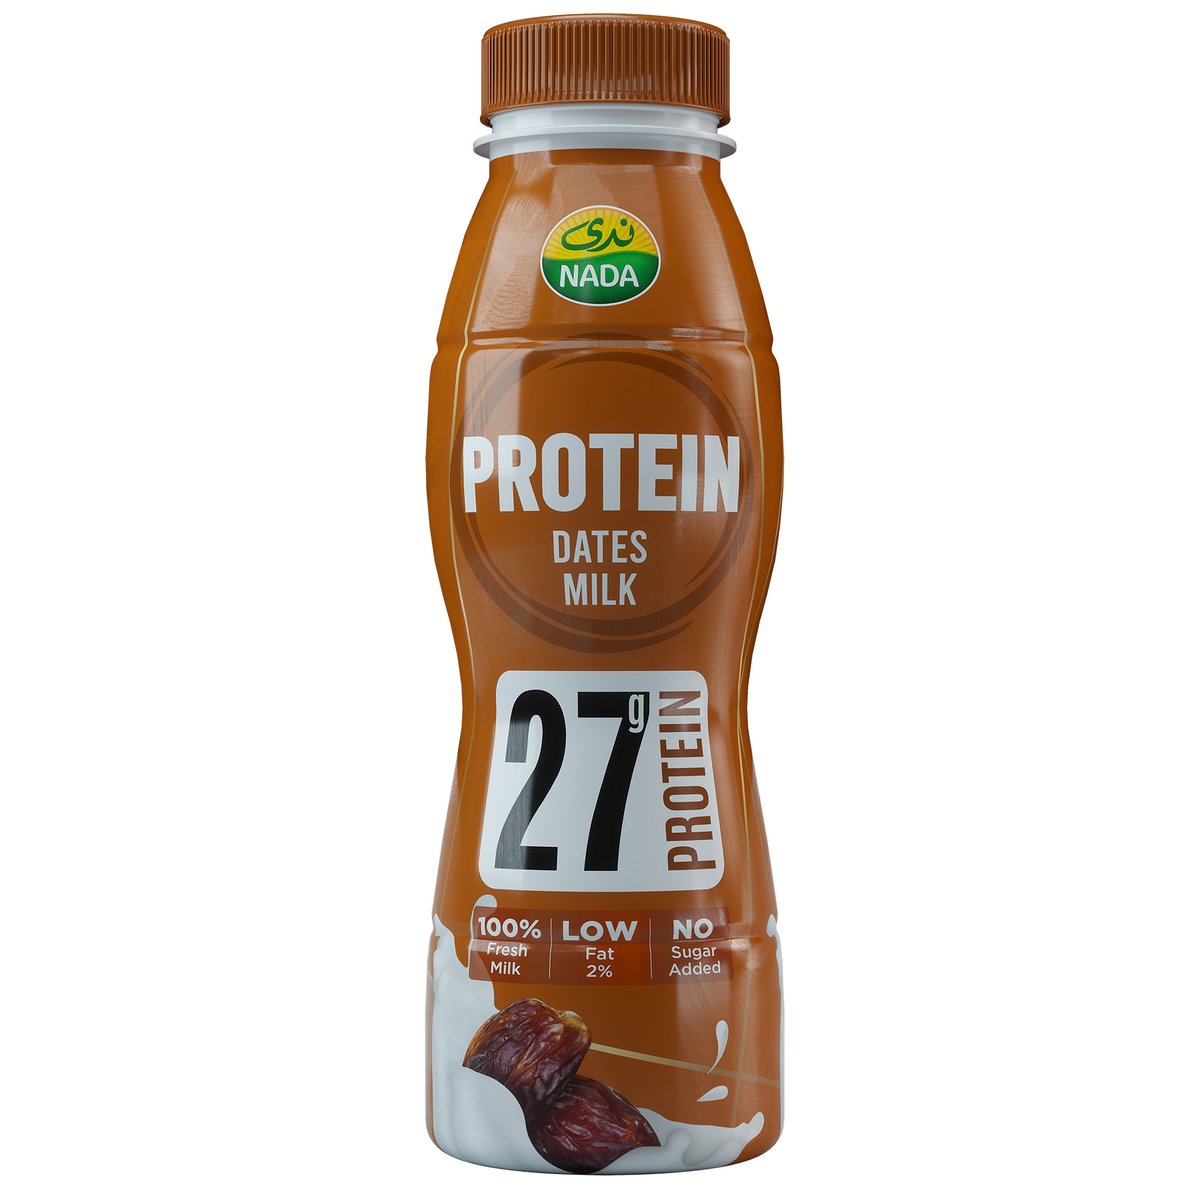 اشتري قم بشراء ندى حليب البروتين بالتمر 320 مل Online at Best Price من الموقع - من لولو هايبر ماركت Flavoured Milk في السعودية